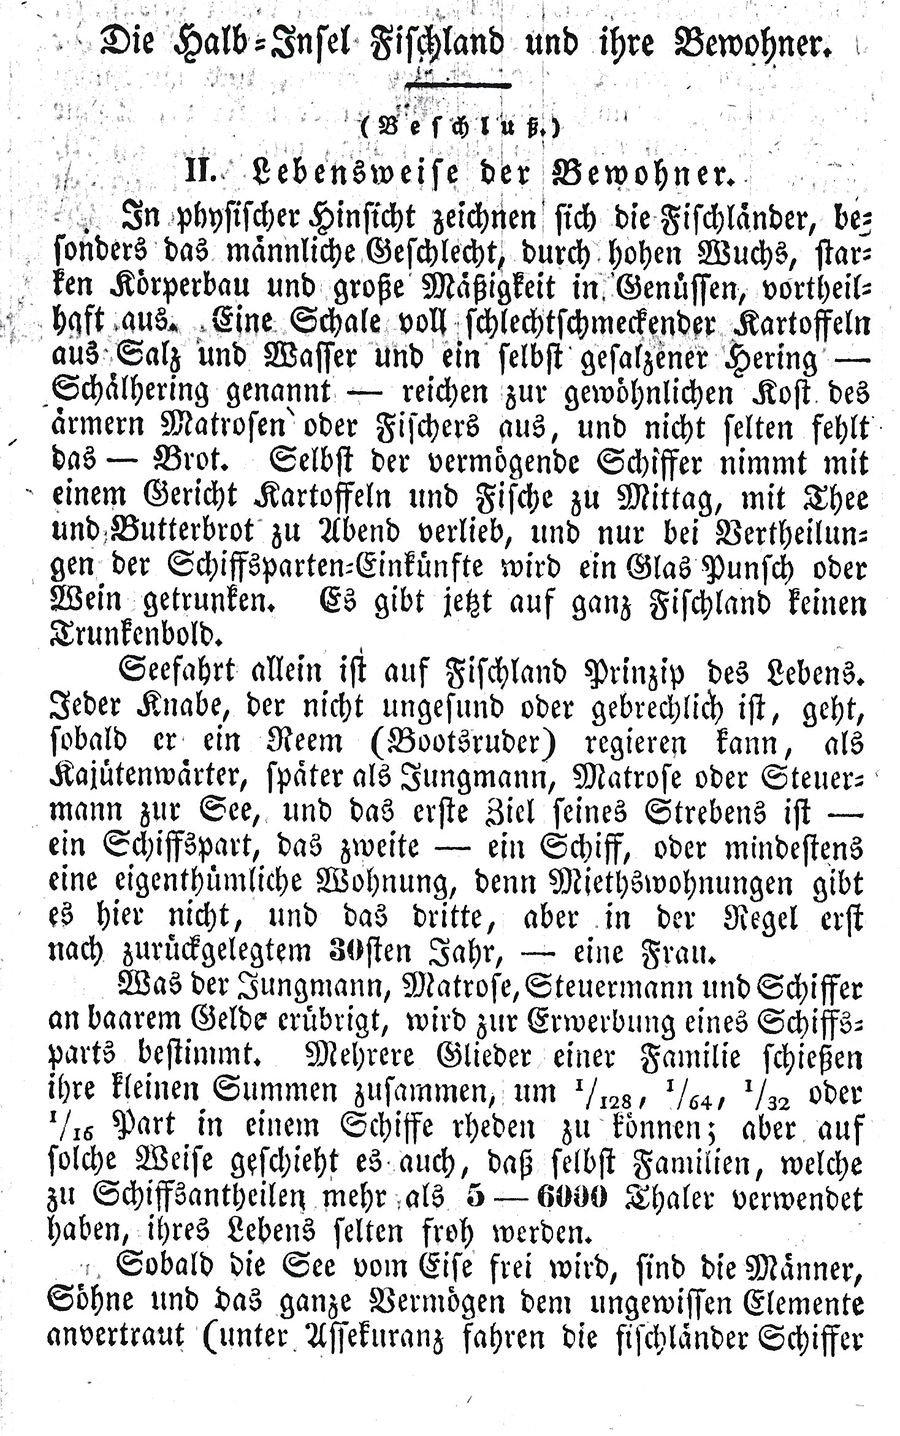 Halbins Fischl 1832 10